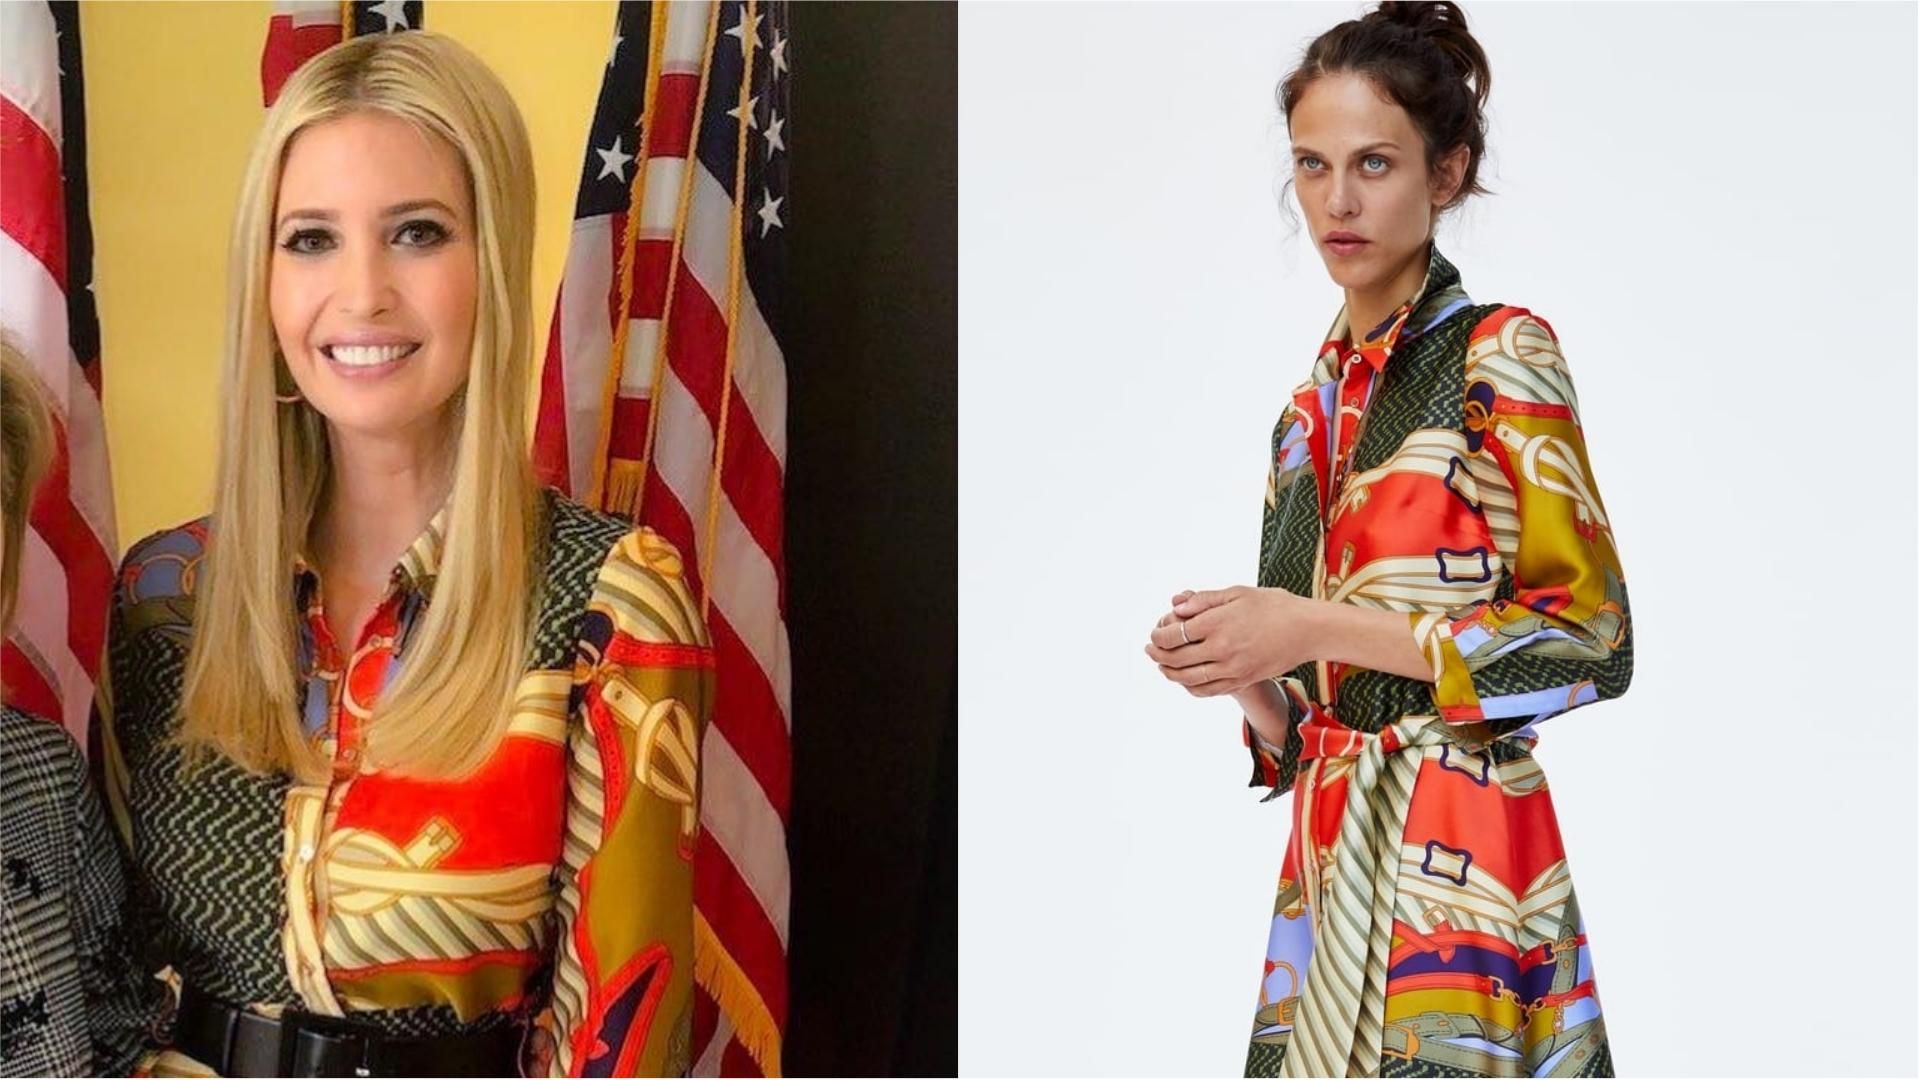 Образ за две тысячи гривен: дочь президента США Иванка Трамп оделась в масс-маркете